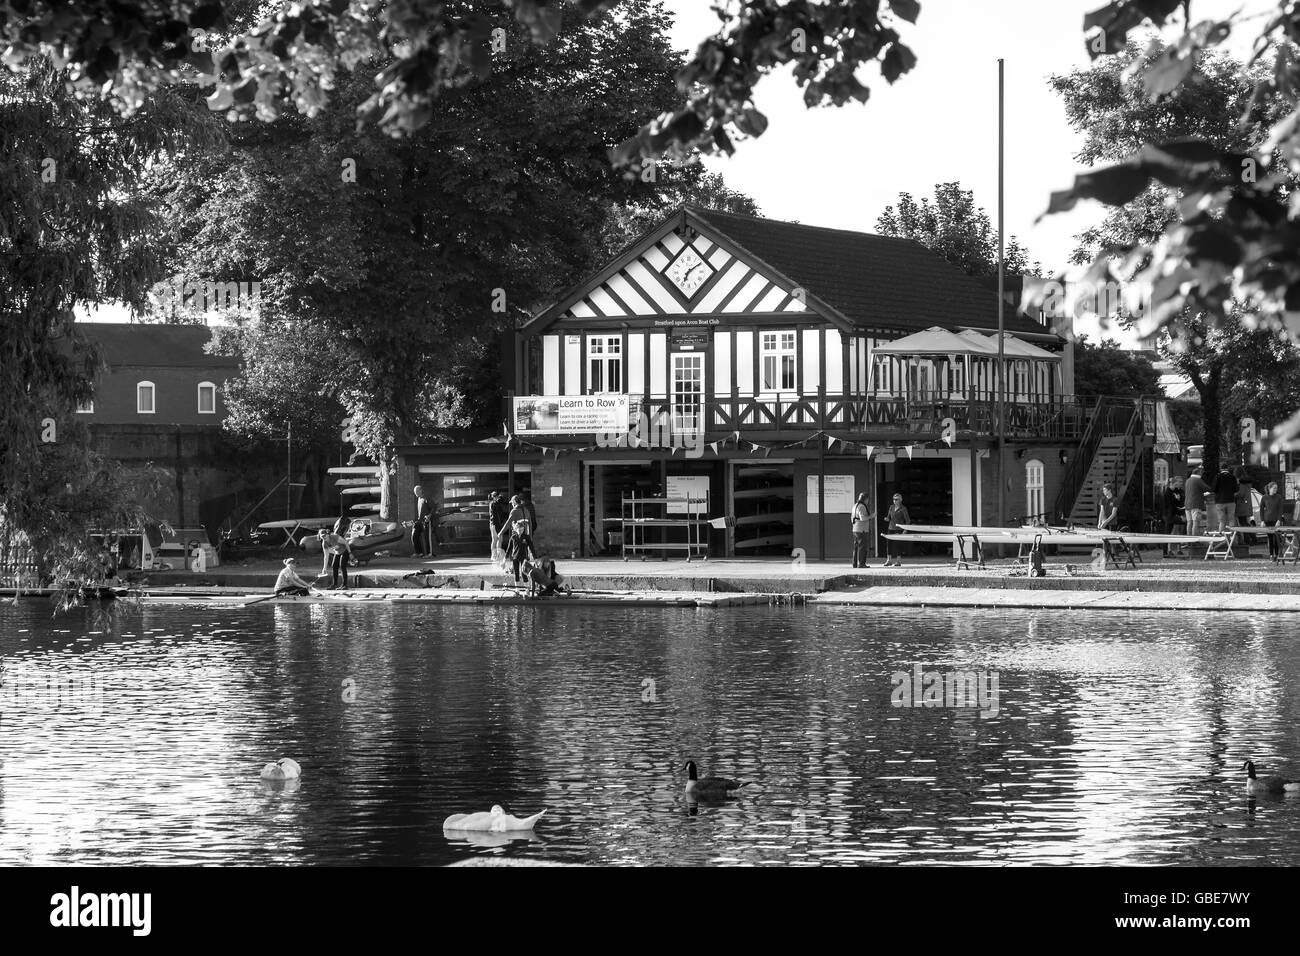 Stratford Upon Avon Boat Club sur la rivière Avon, dans le Warwickshire. Banque D'Images